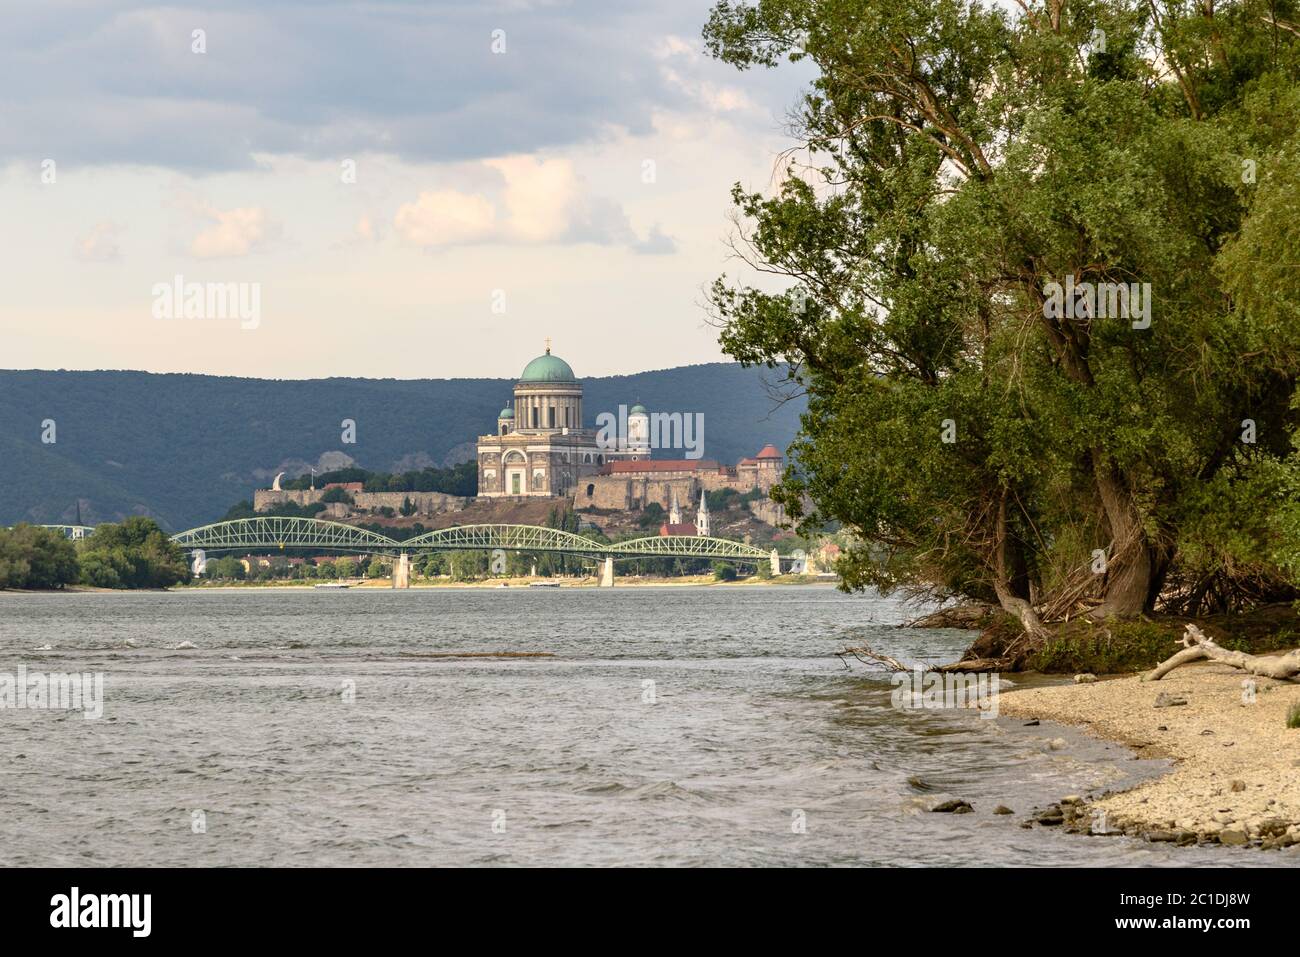 Le pont Maria Valeria enjambant le Danube avec la basilique Esztergom en arrière-plan Banque D'Images